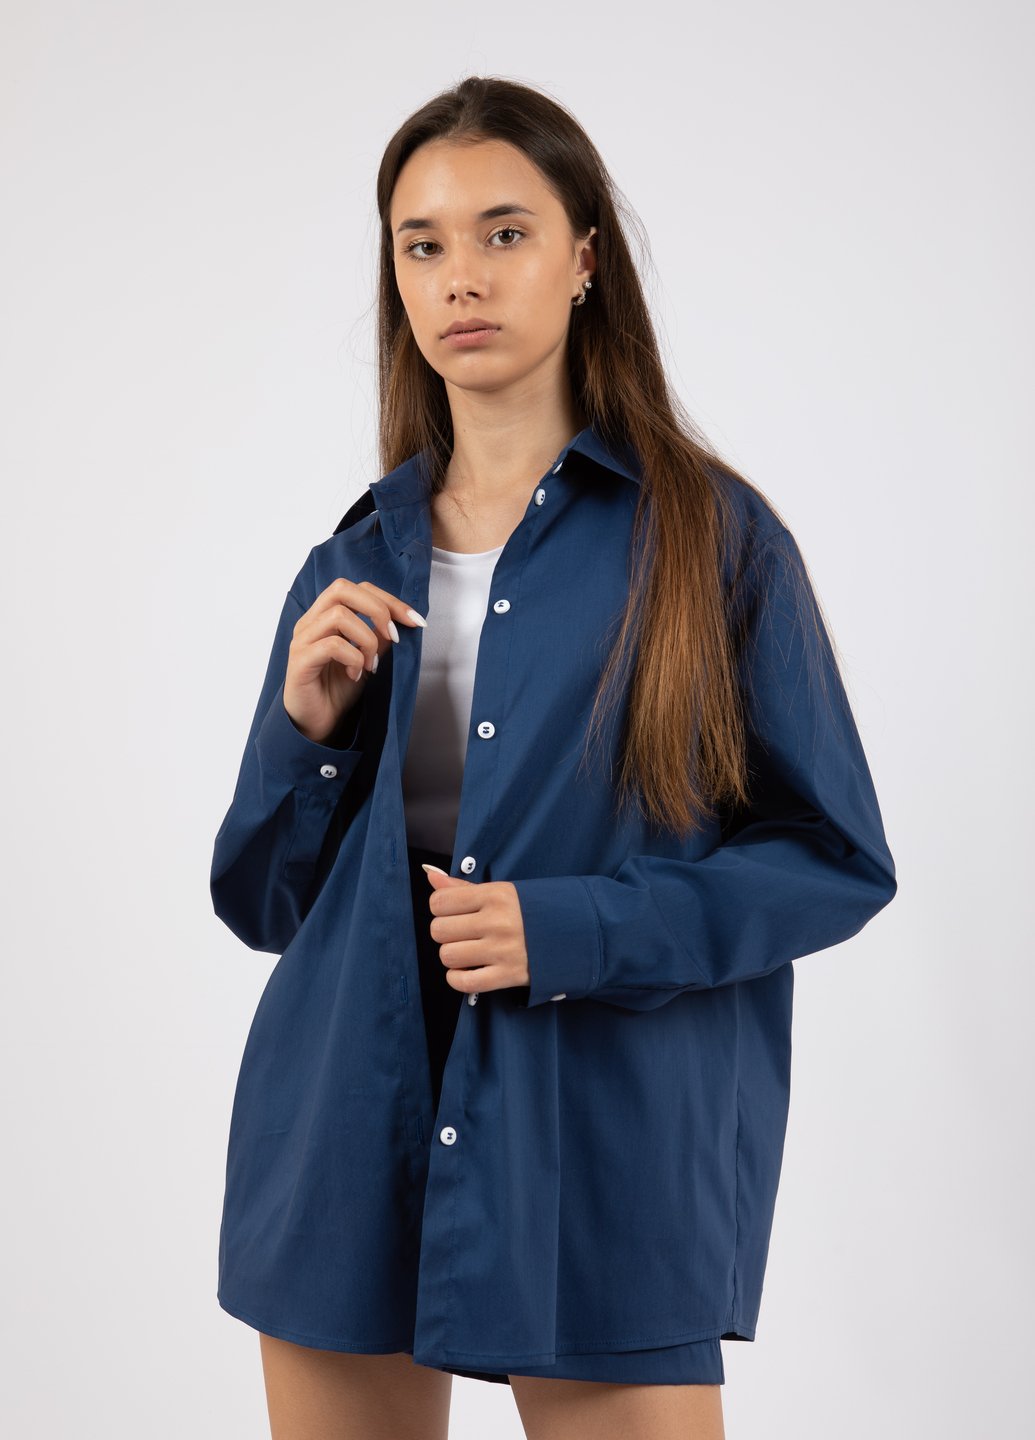 Купить Классическая хлопковая рубашка женская Merlini Вена 200000032 - Синий, 42-44 в интернет-магазине